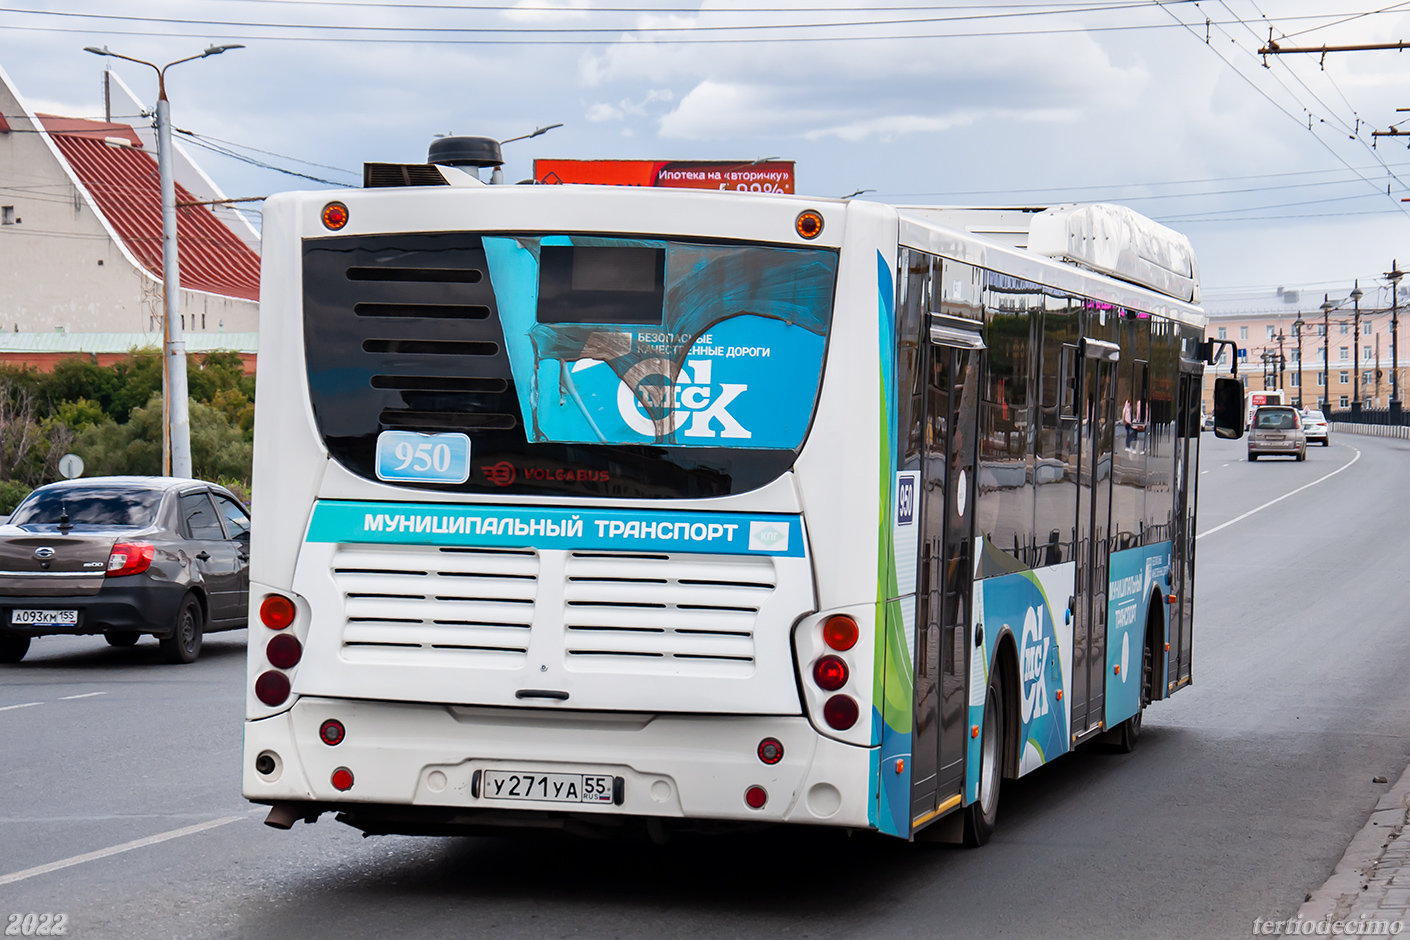 Omsk region, Volgabus-5270.G2 (CNG) č. 950